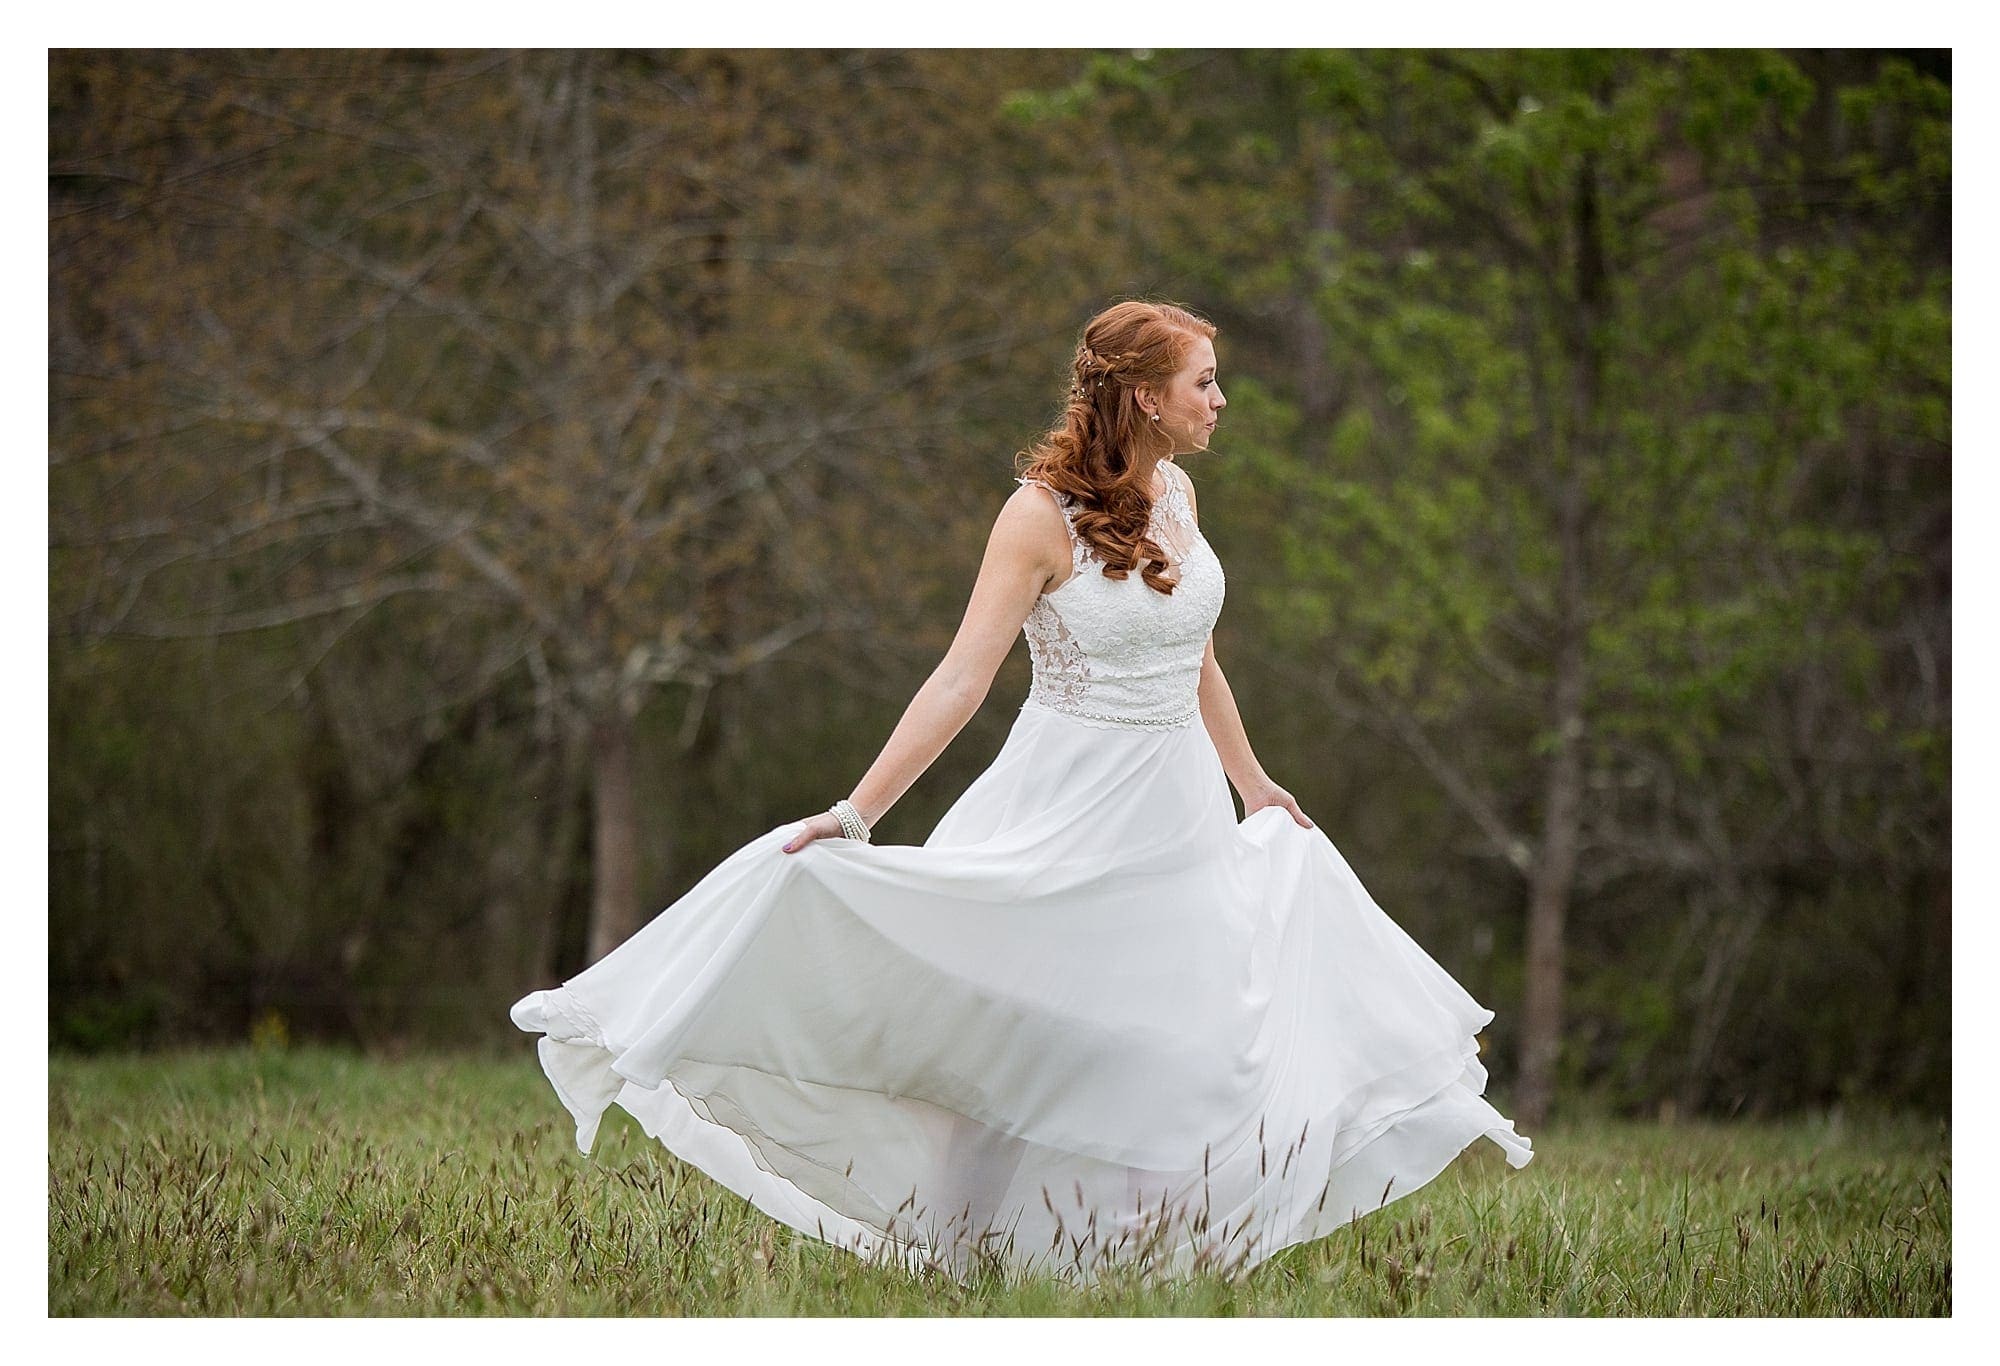 Bride in field spinning in dress